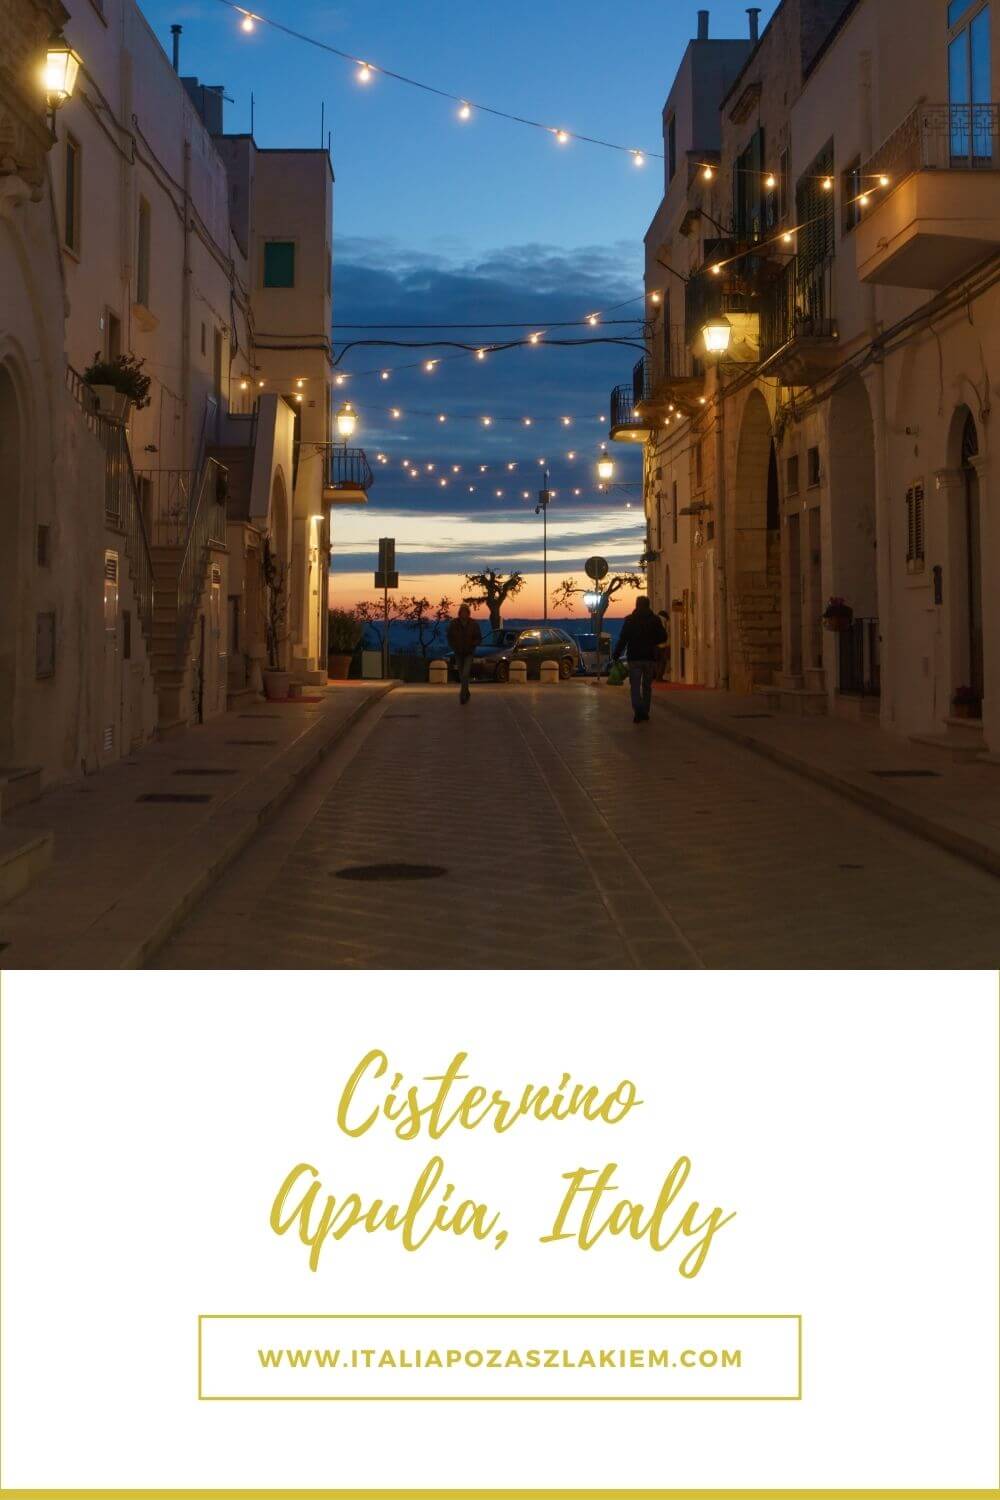 Apulia, Cisternino, Italy